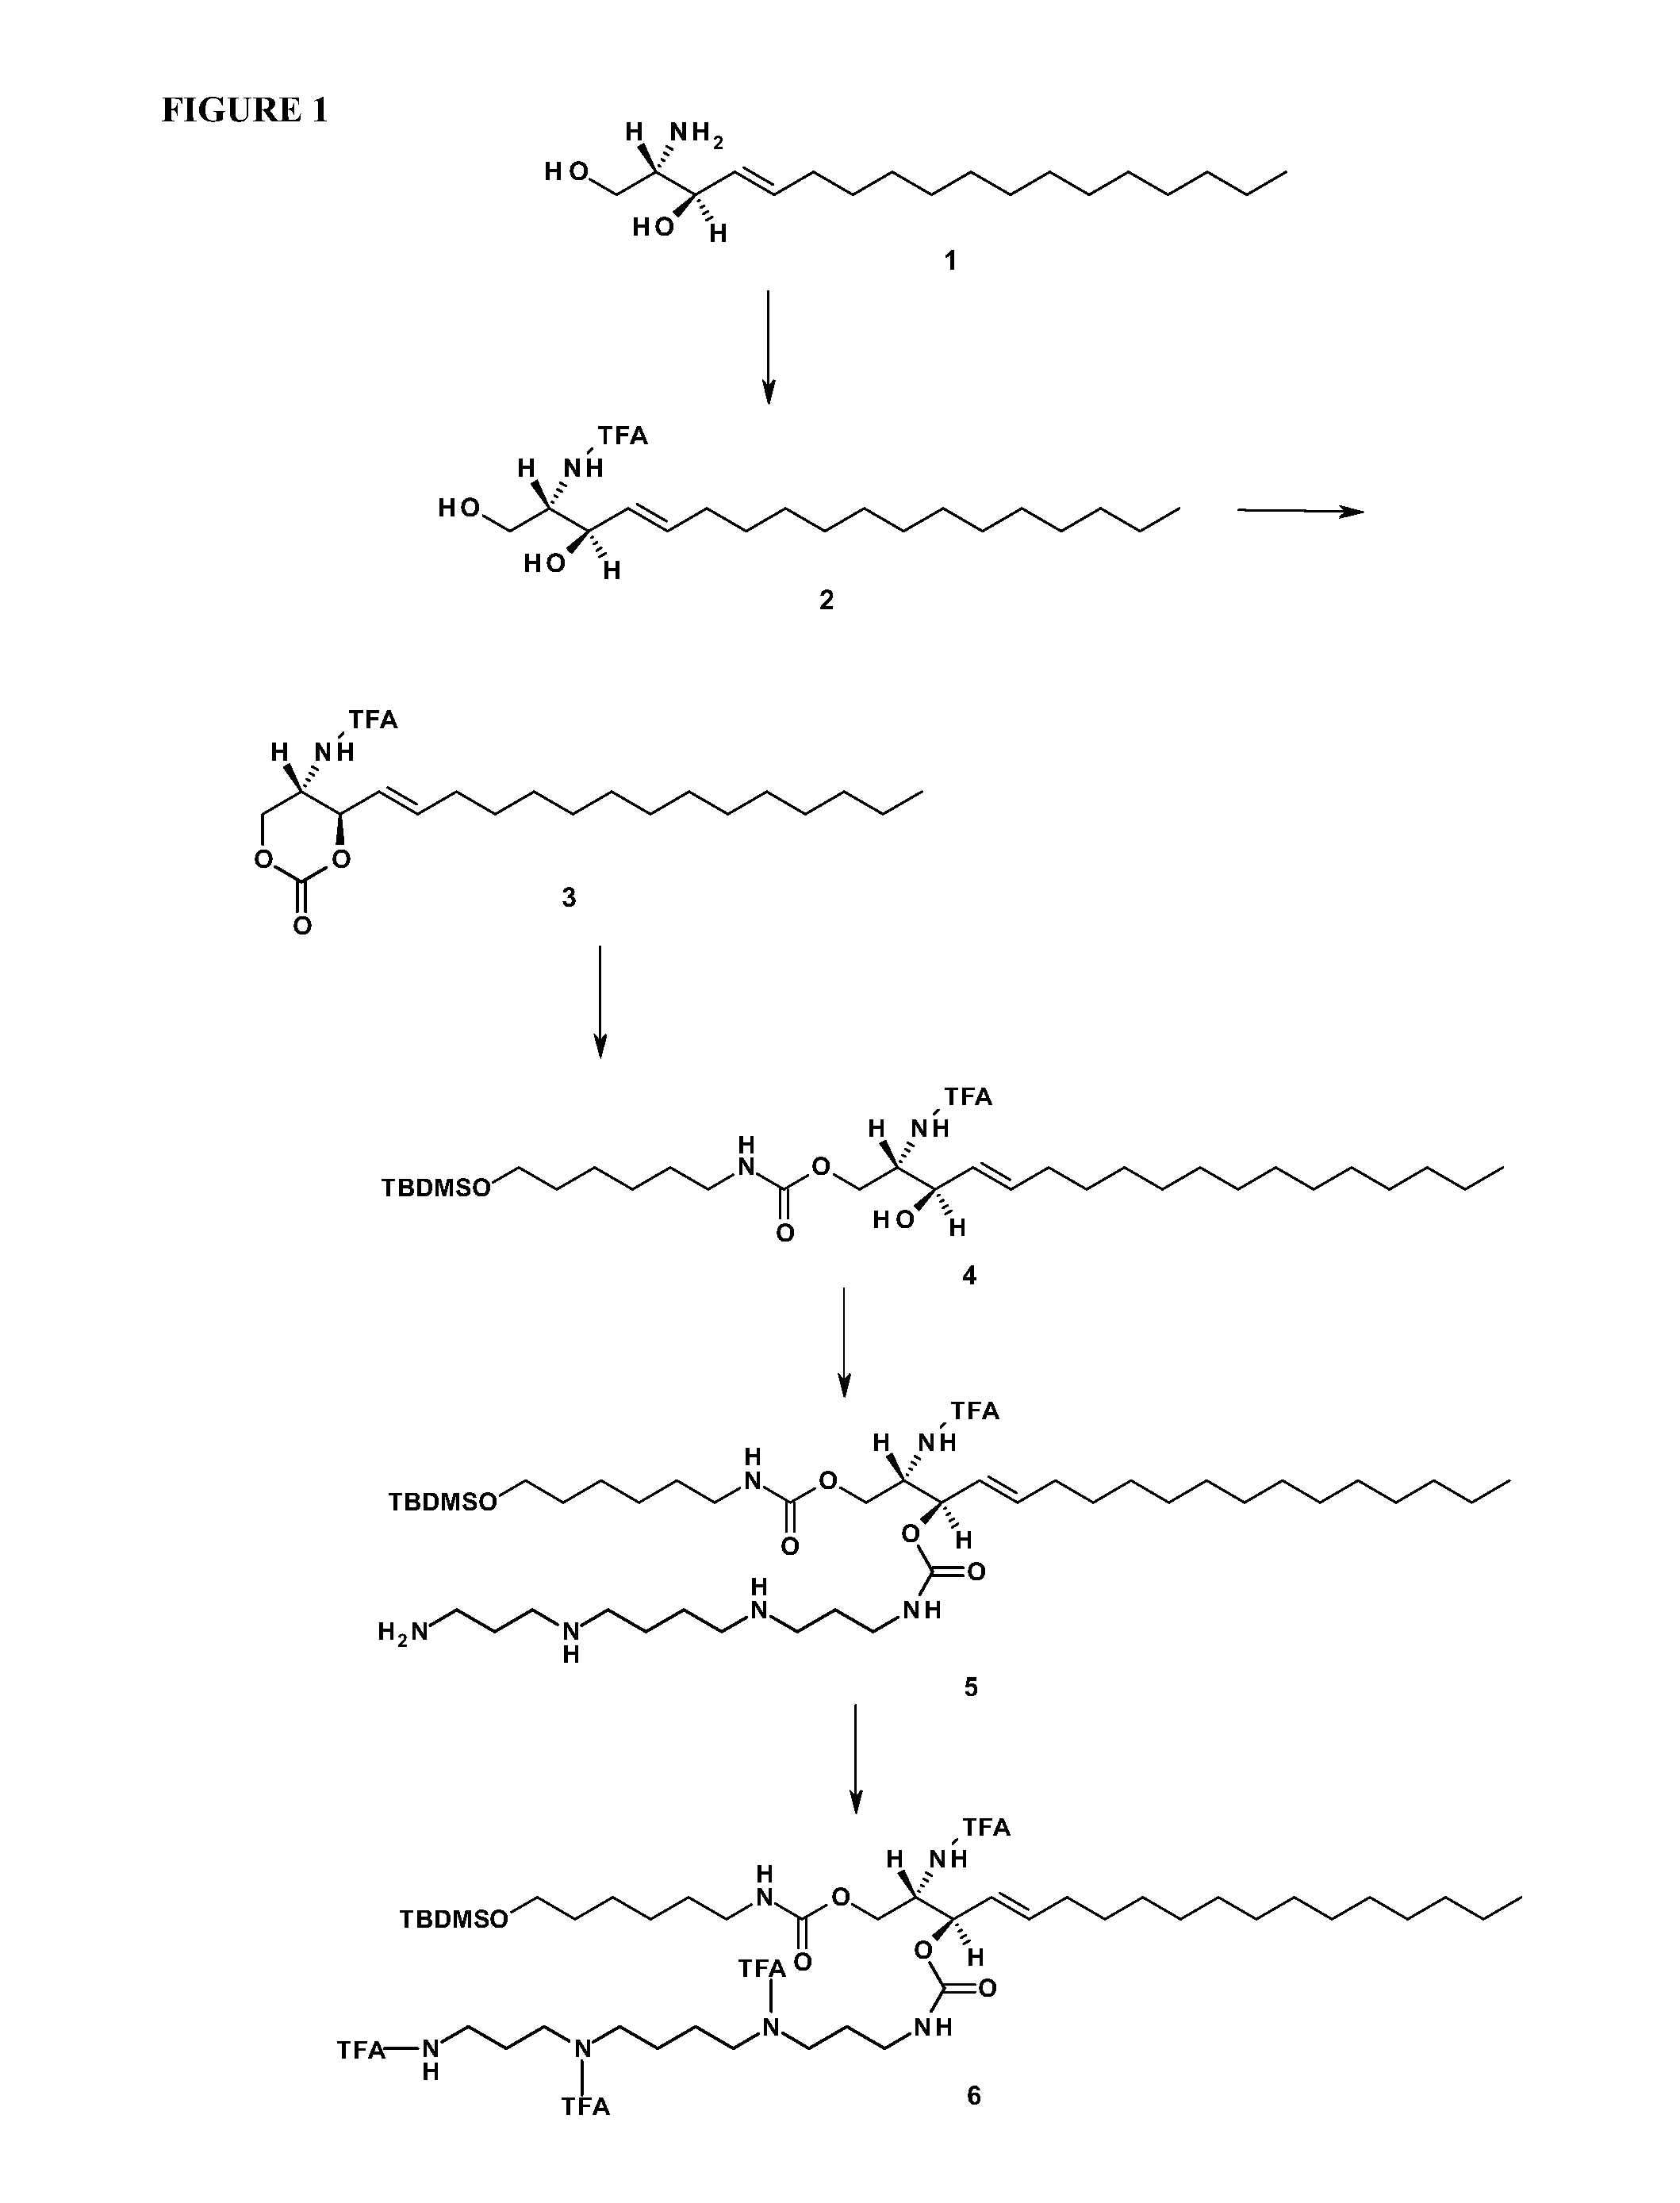 Sphingolipid-polyalkylamine-oligonucleotide compounds